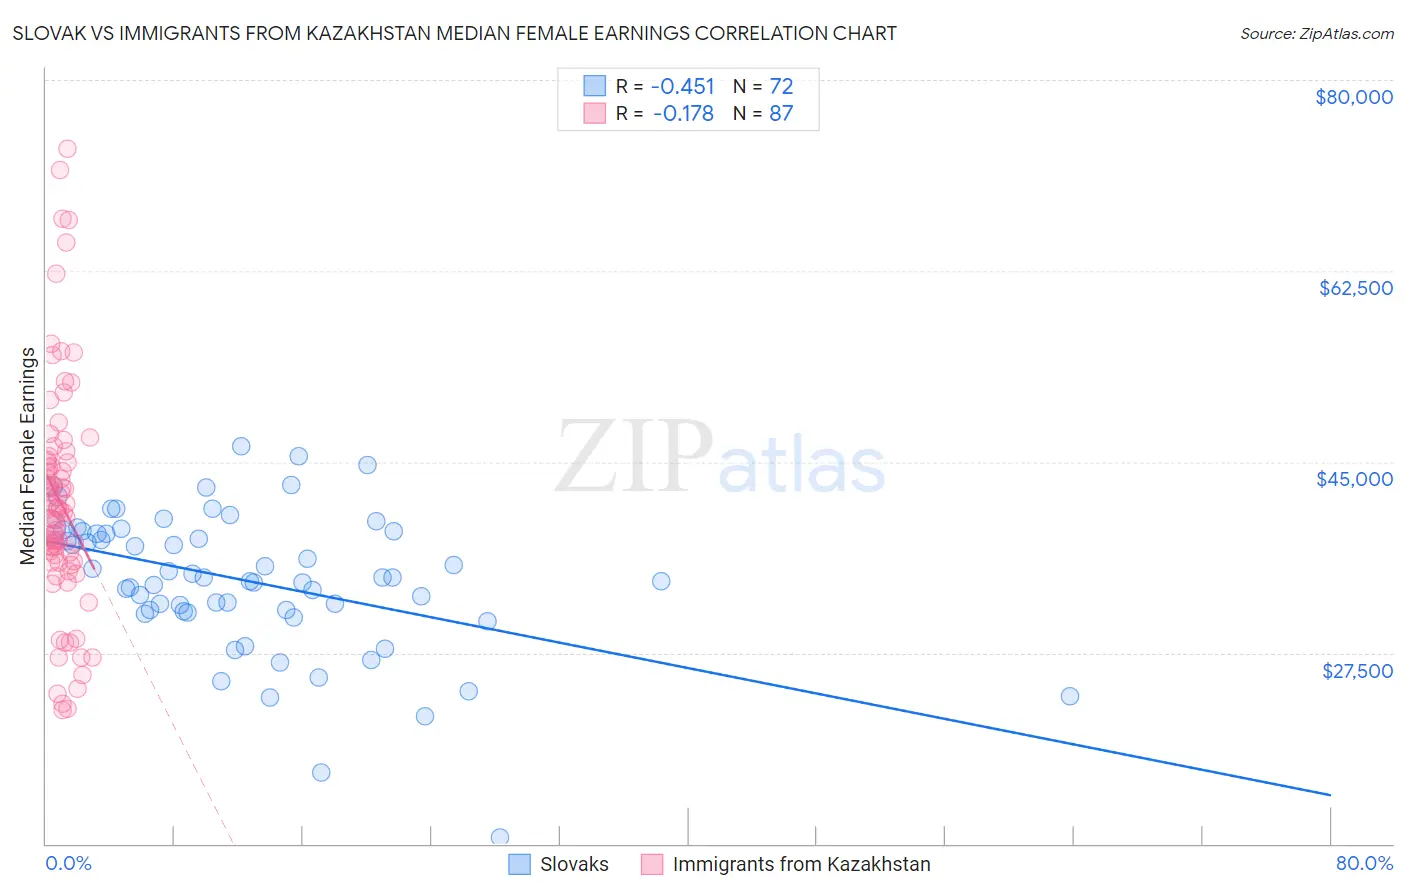 Slovak vs Immigrants from Kazakhstan Median Female Earnings